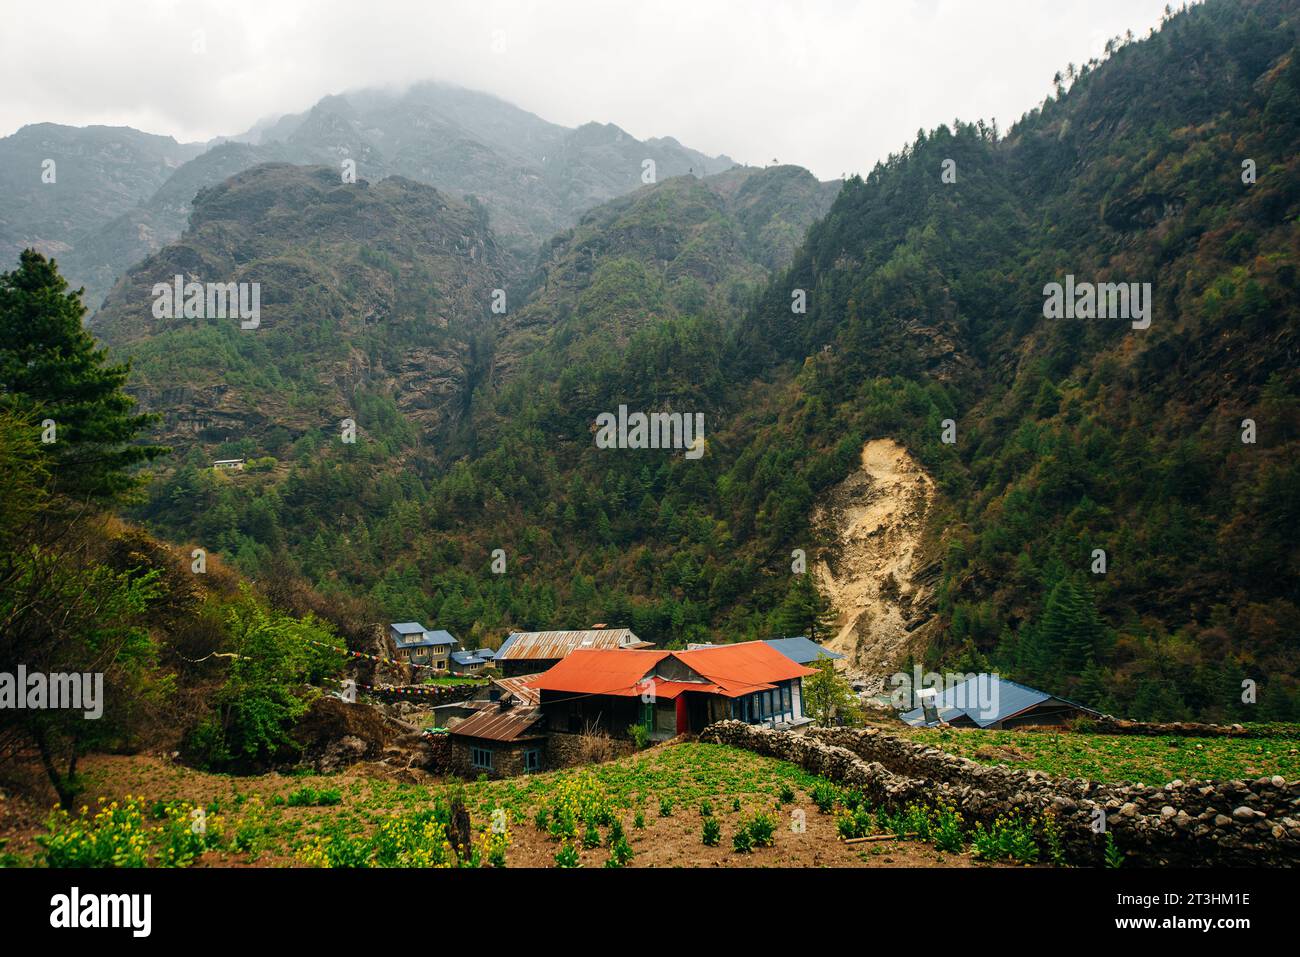 Villaggio nepalese nell'Himalaya. Foto di alta qualità Foto Stock